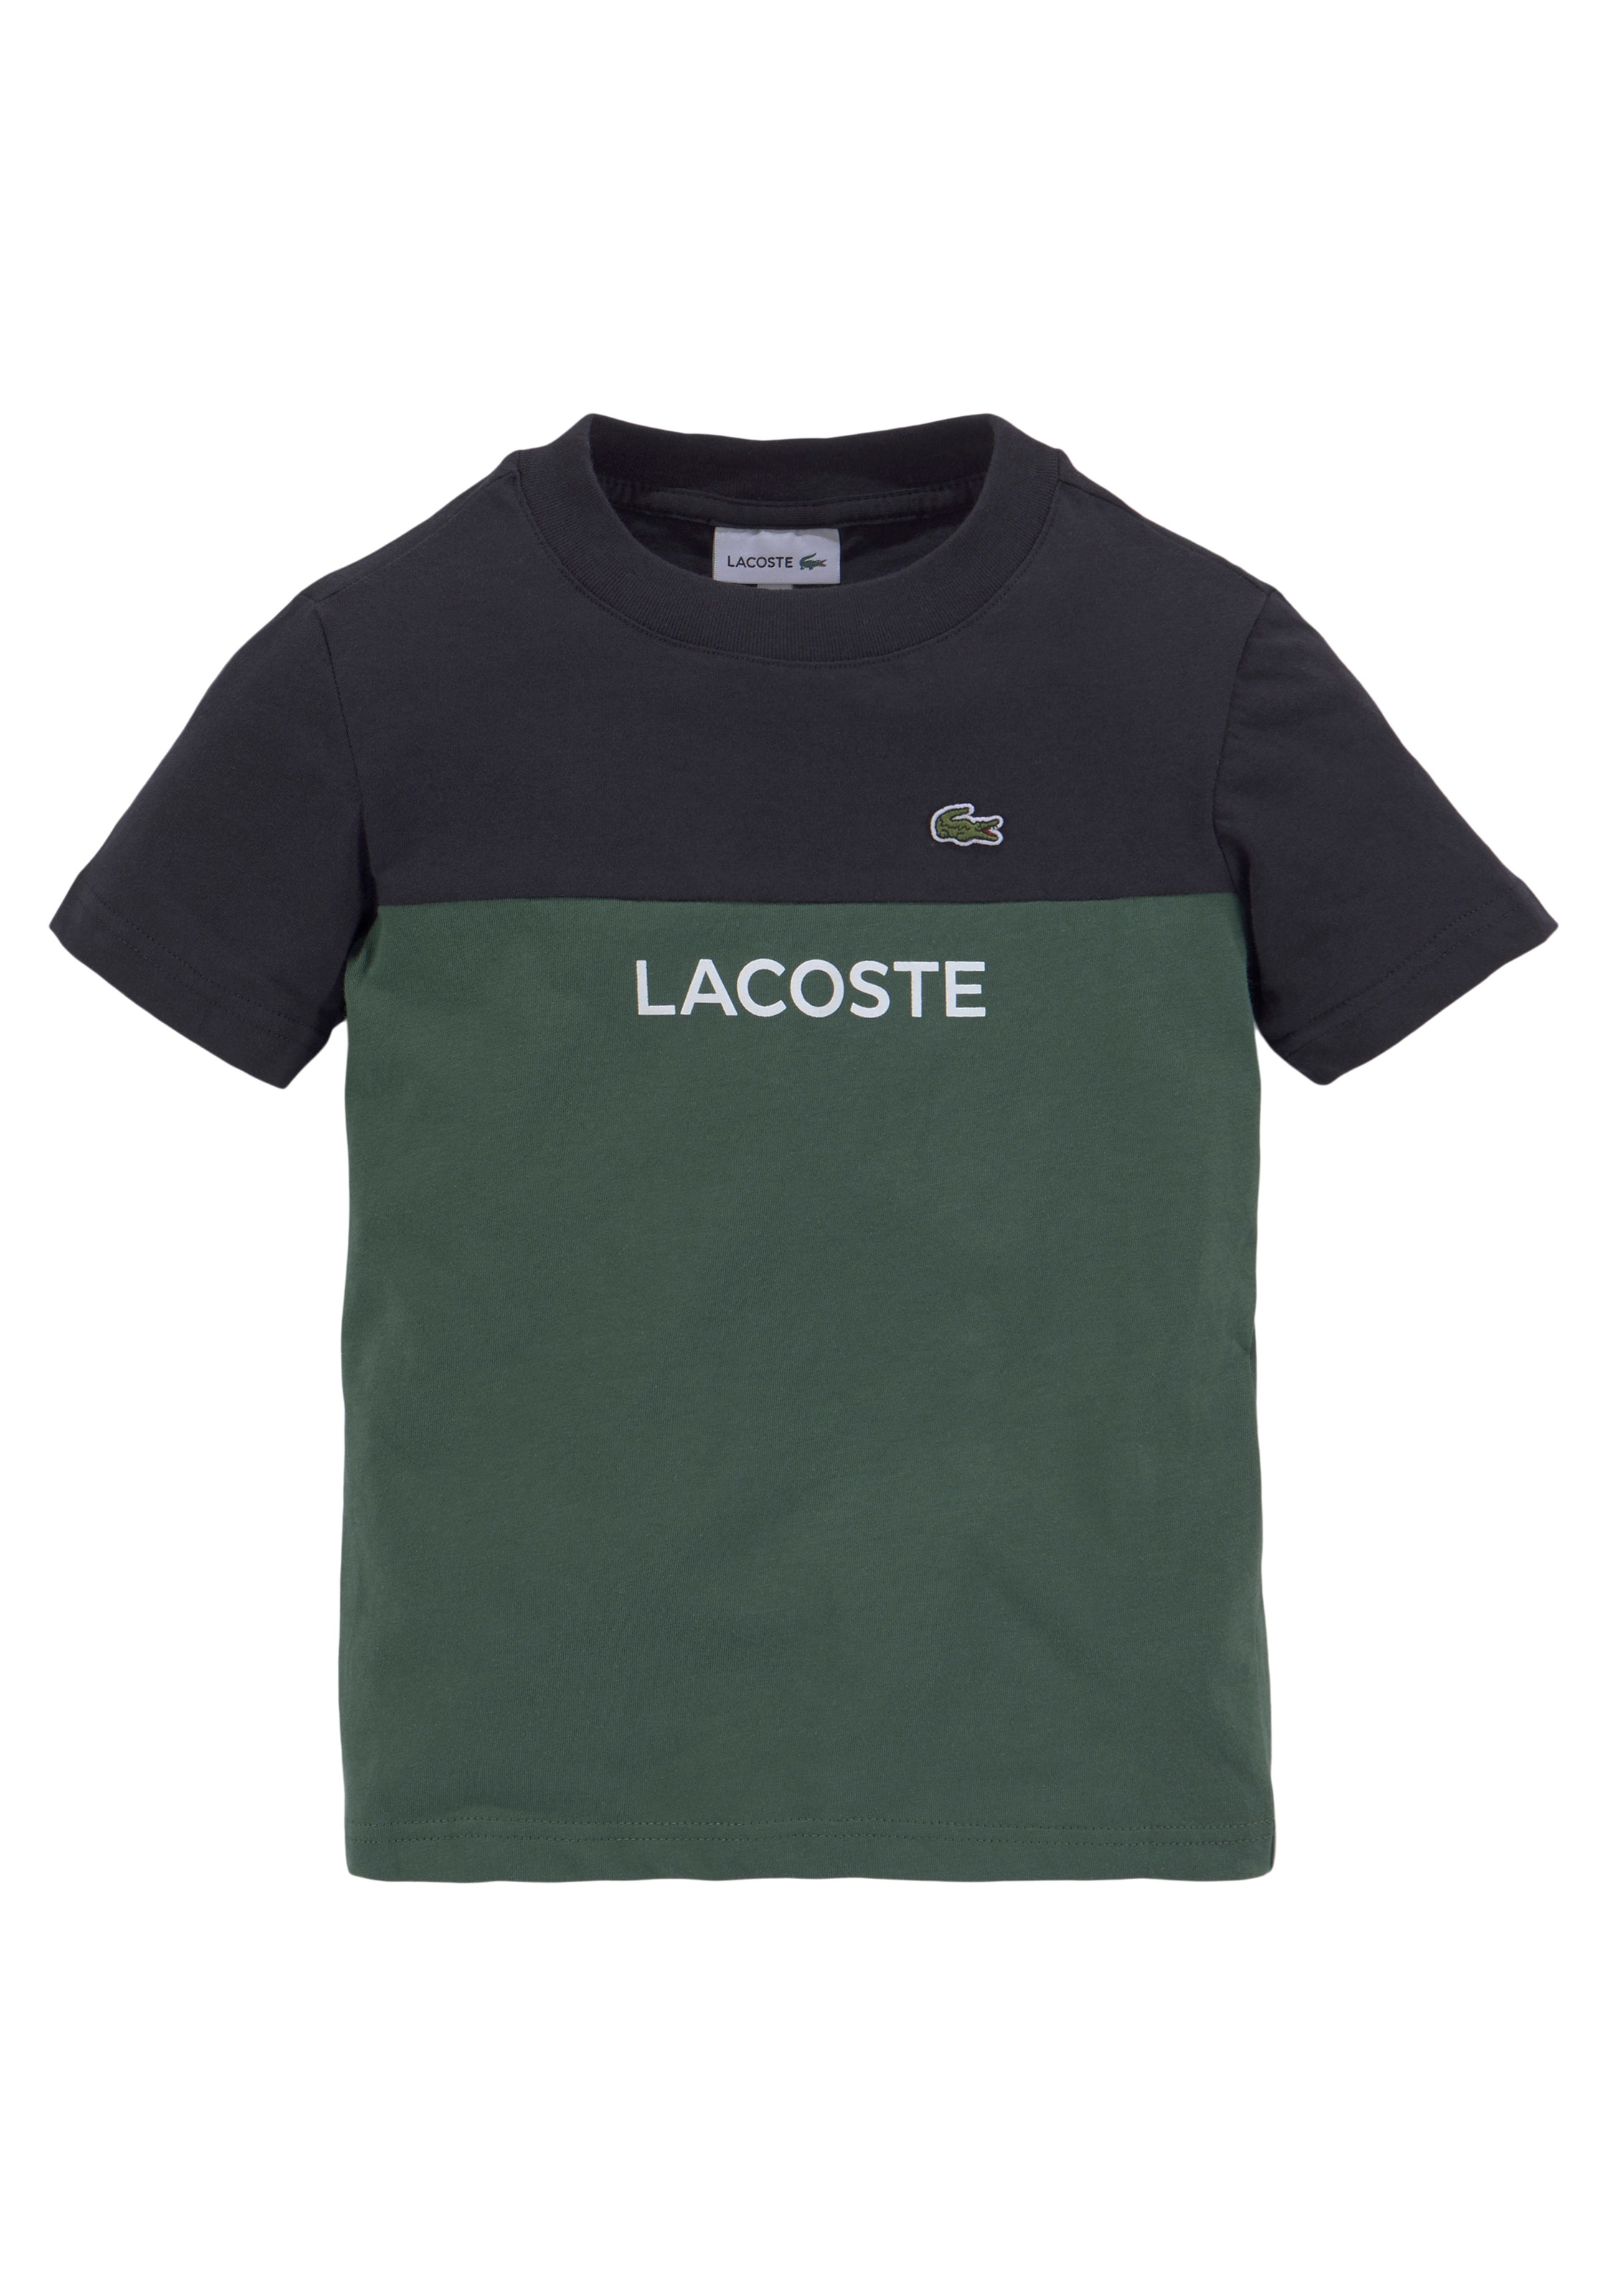 OTTO im Labelapplikationen Lacoste mit Shop Online der T-Shirt, dezenten auf Brust